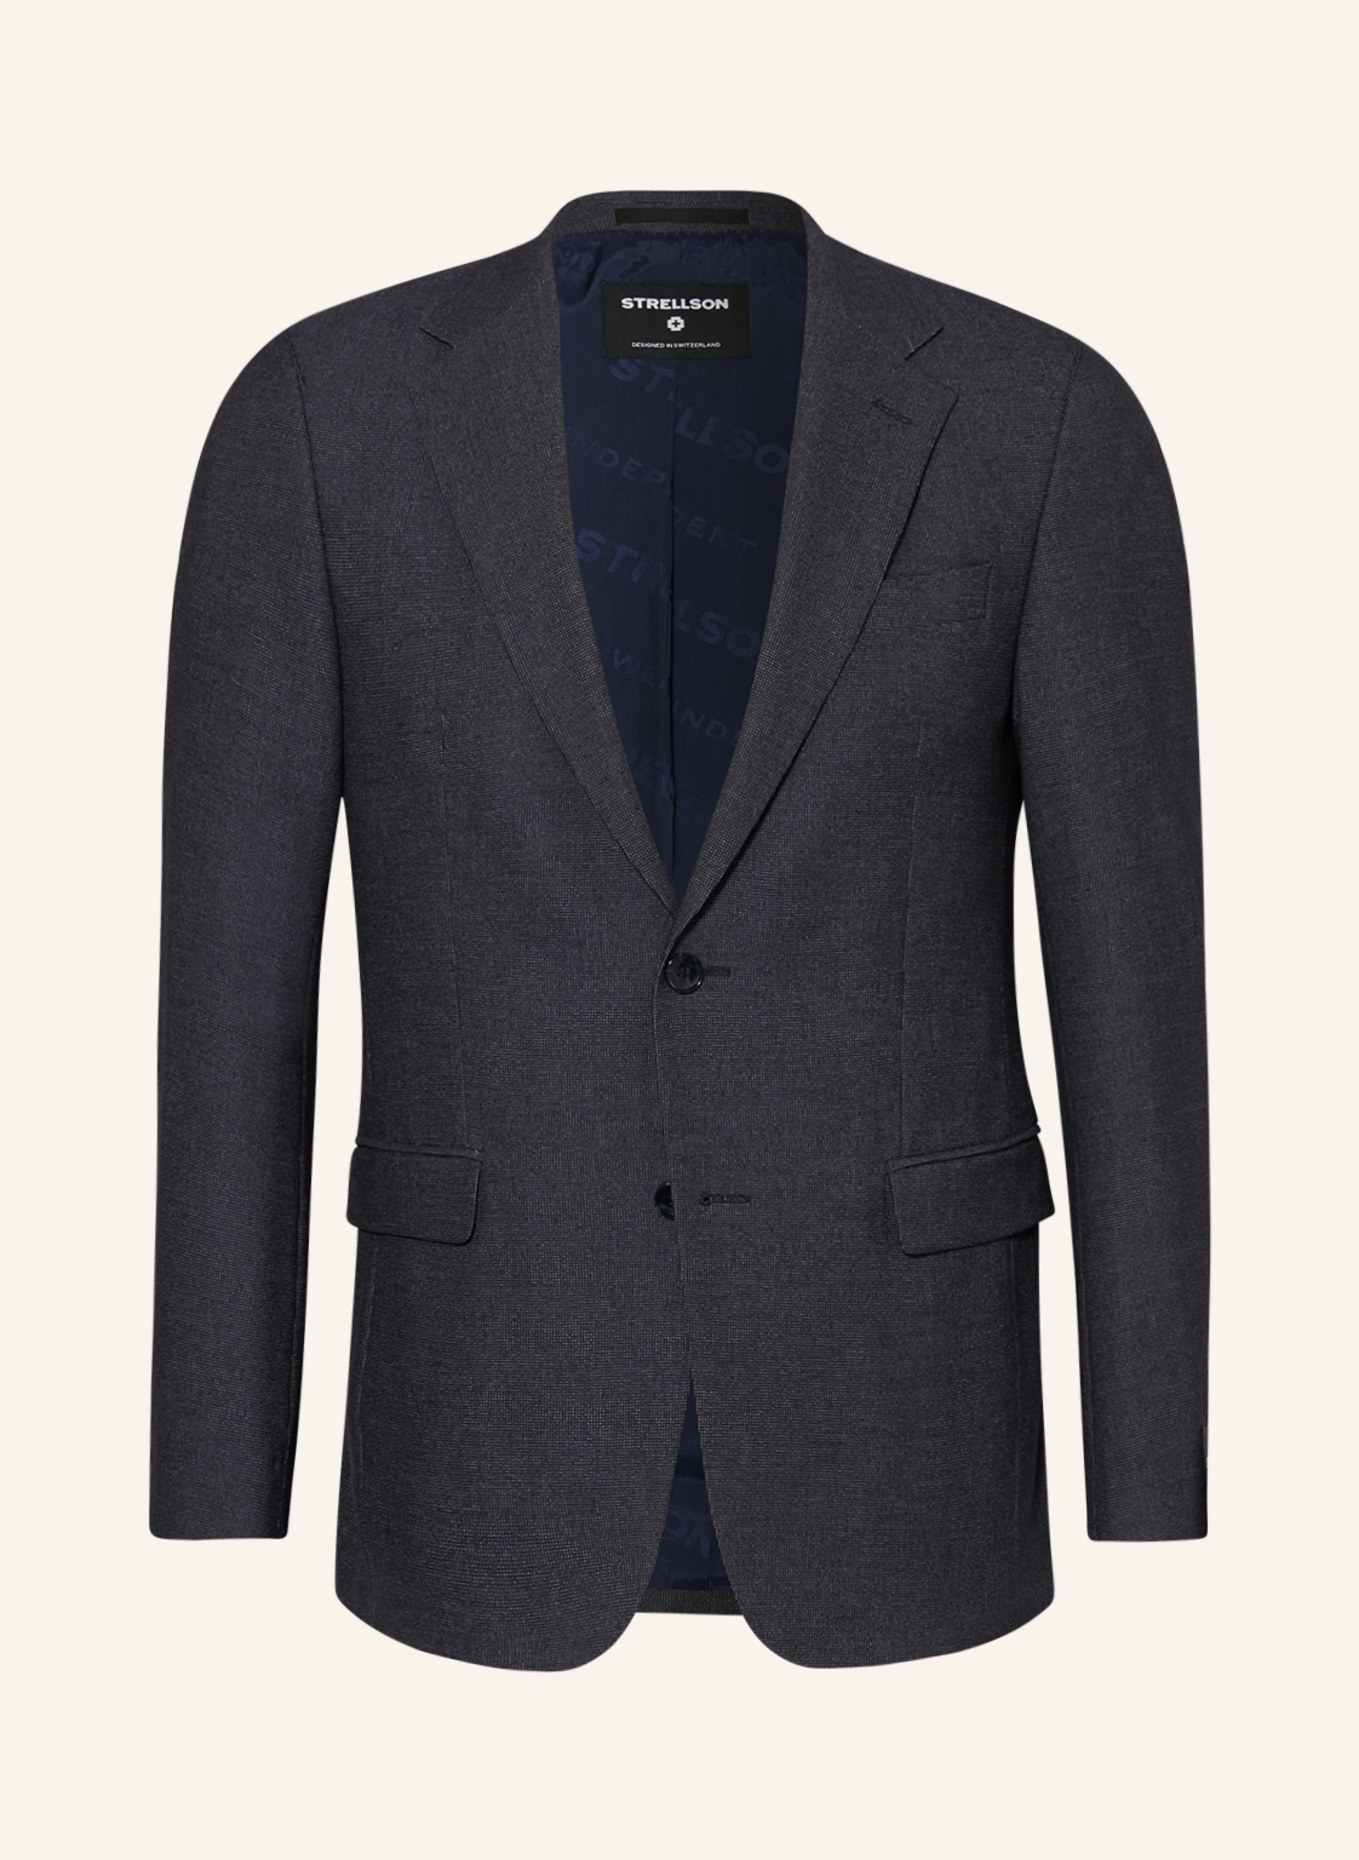 STRELLSON Suit jacket ALZER2 slim fit, Color: 401 Dark Blue                  401 (Image 1)